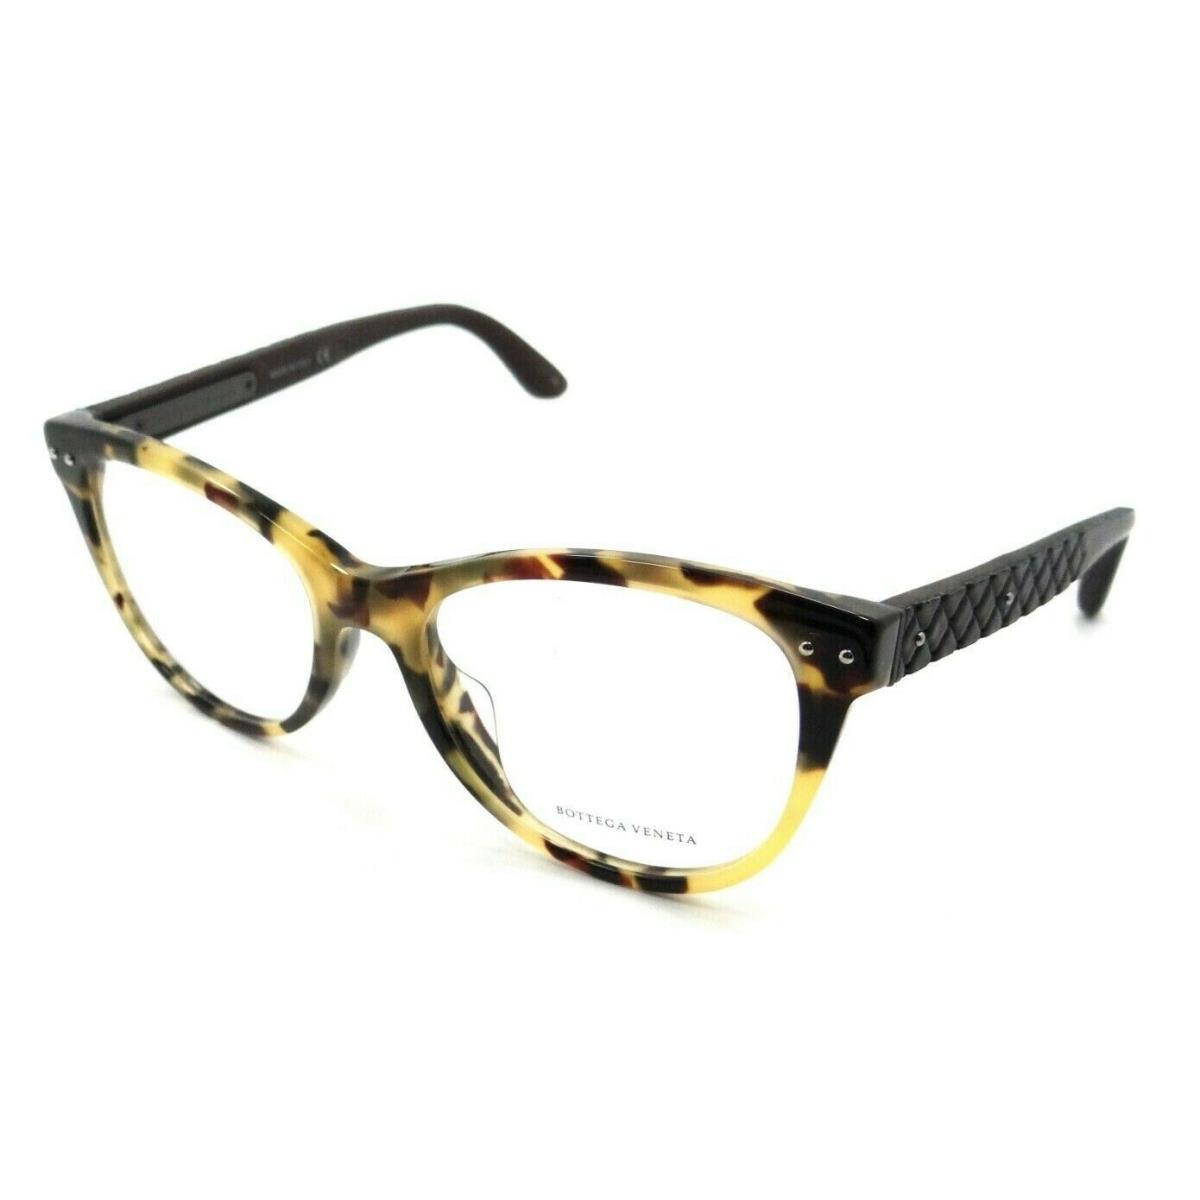 Bottega Veneta Eyeglasses Frames BV0009OA 003 52-15-145 Havana / Black Asian Fit